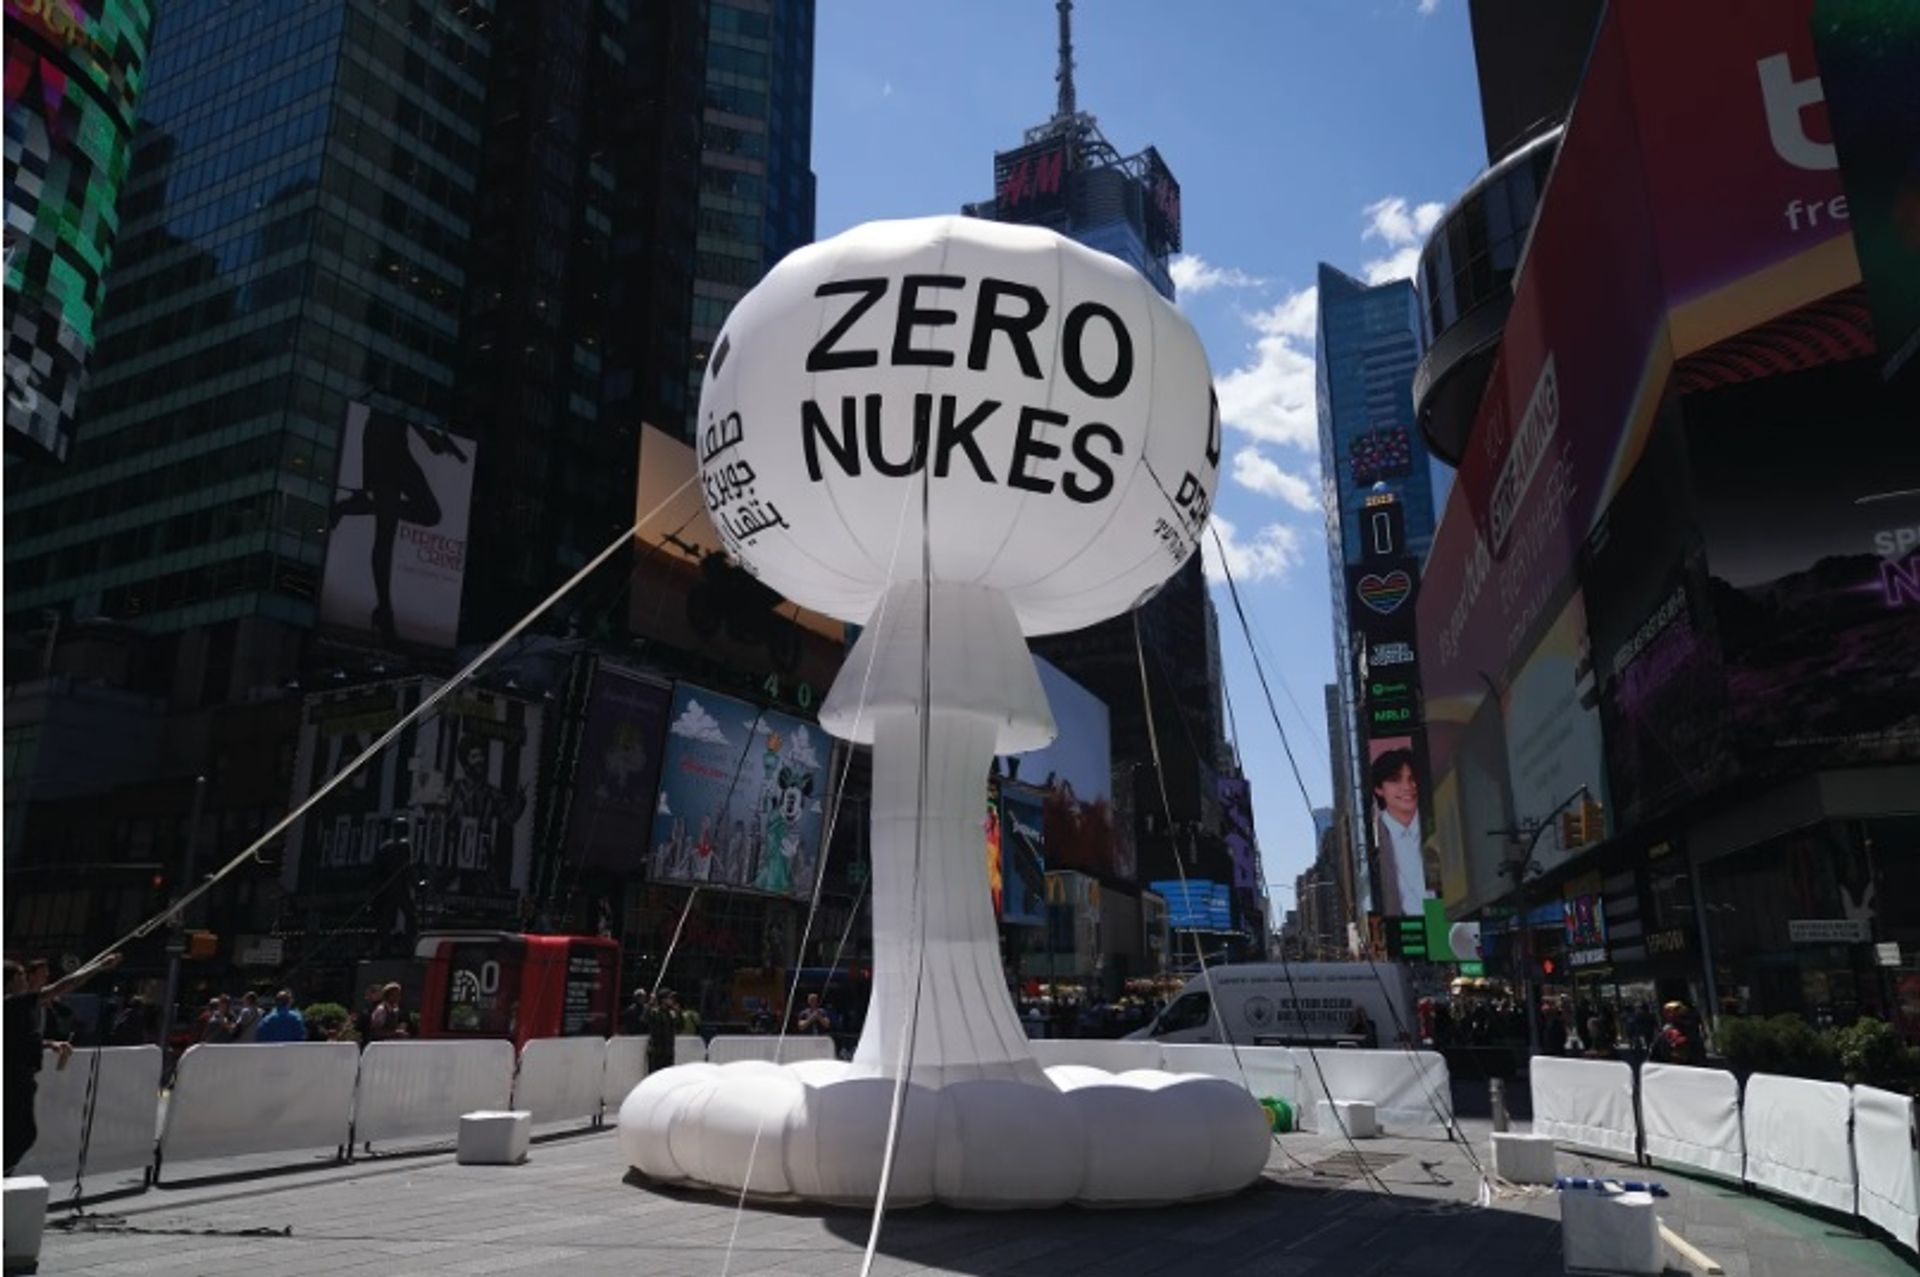 הפסל המתנפח של פדרו רייס ZERO NUKES (2022) בטיימס סקוור

צילום של אליסון דינר